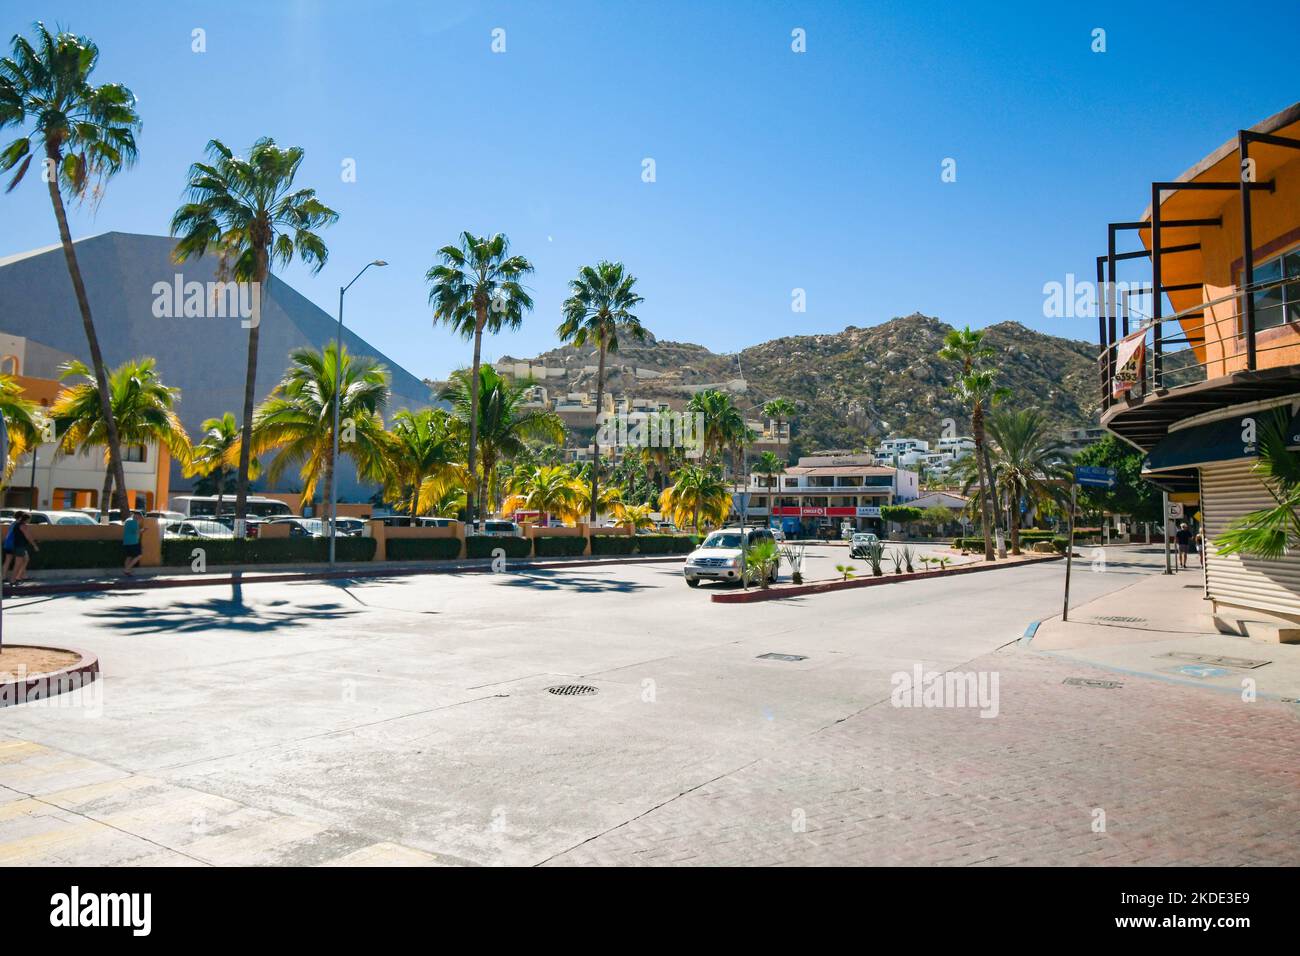 Downtown Cabo San Lucas, Baja California Sur, Mexico. Stock Photo